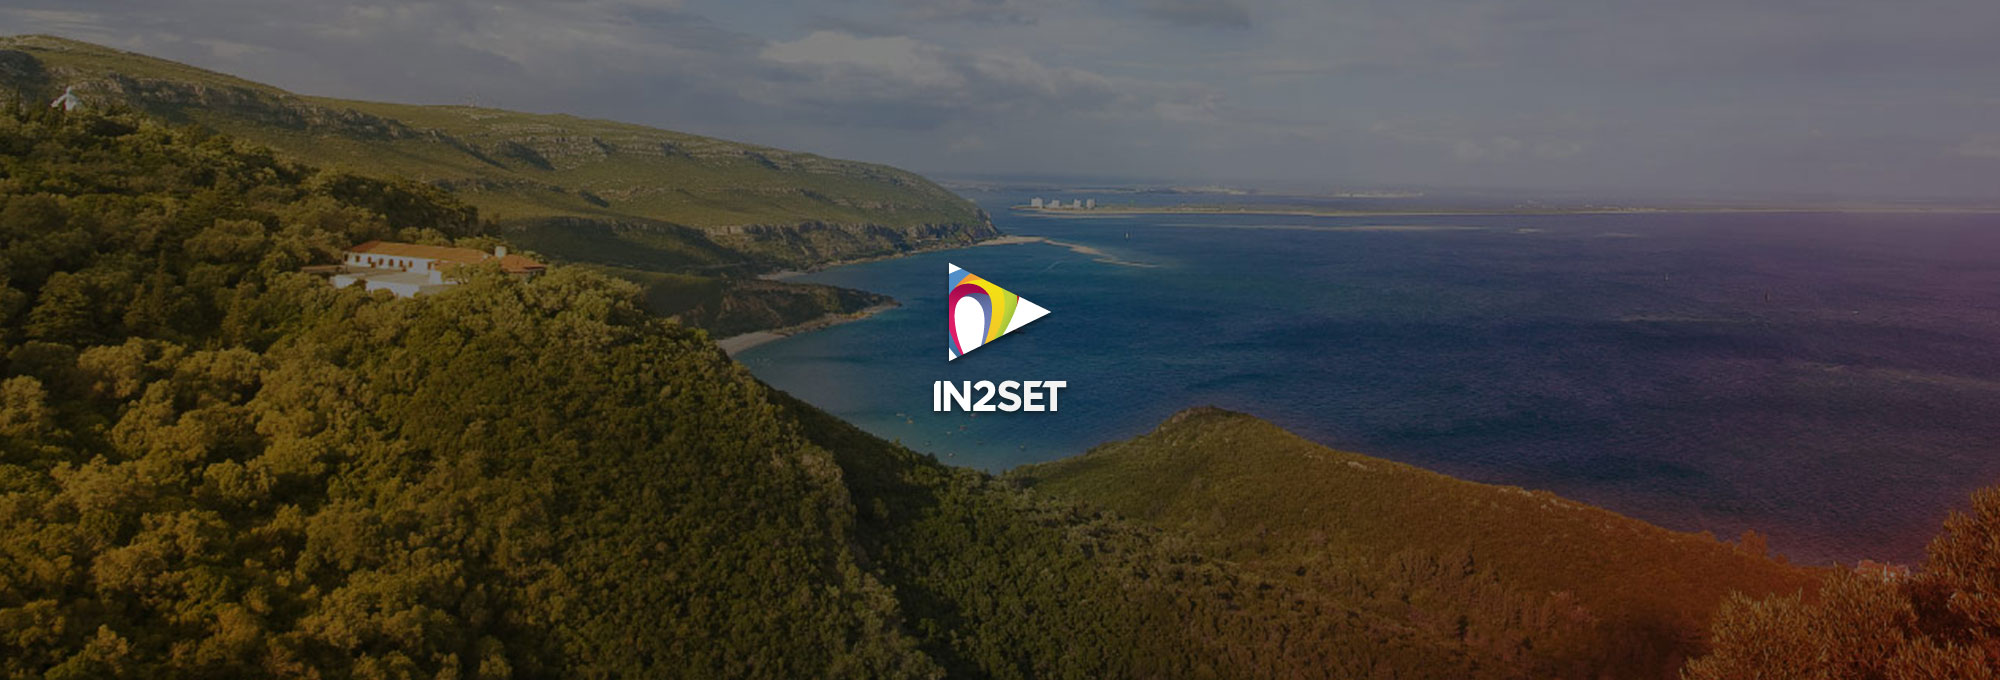 O IN2SET– Interface colaborativo para o desenvolvimento e inovação da Península de Setúbal